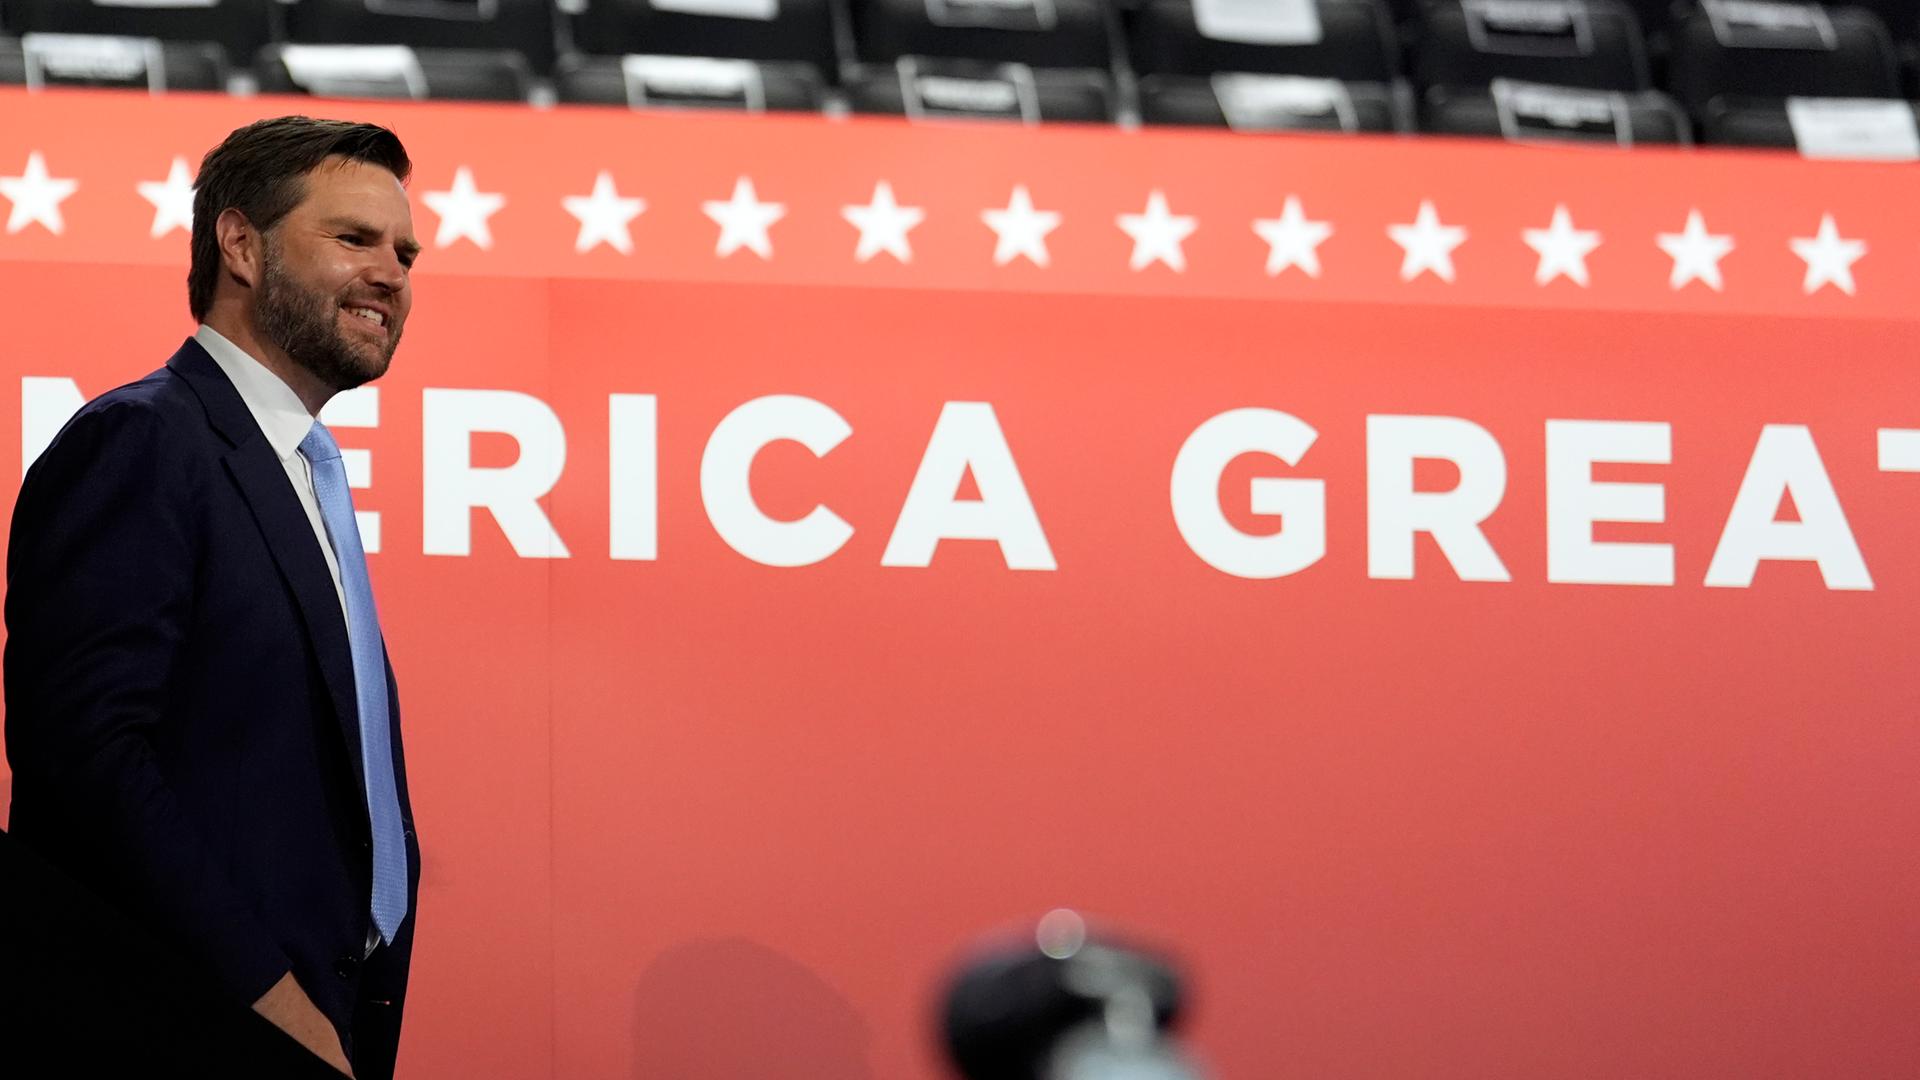 Trumps Vize J.D Vance steht vor einer roten Wand mit dem Schriftzug "Make America great again".